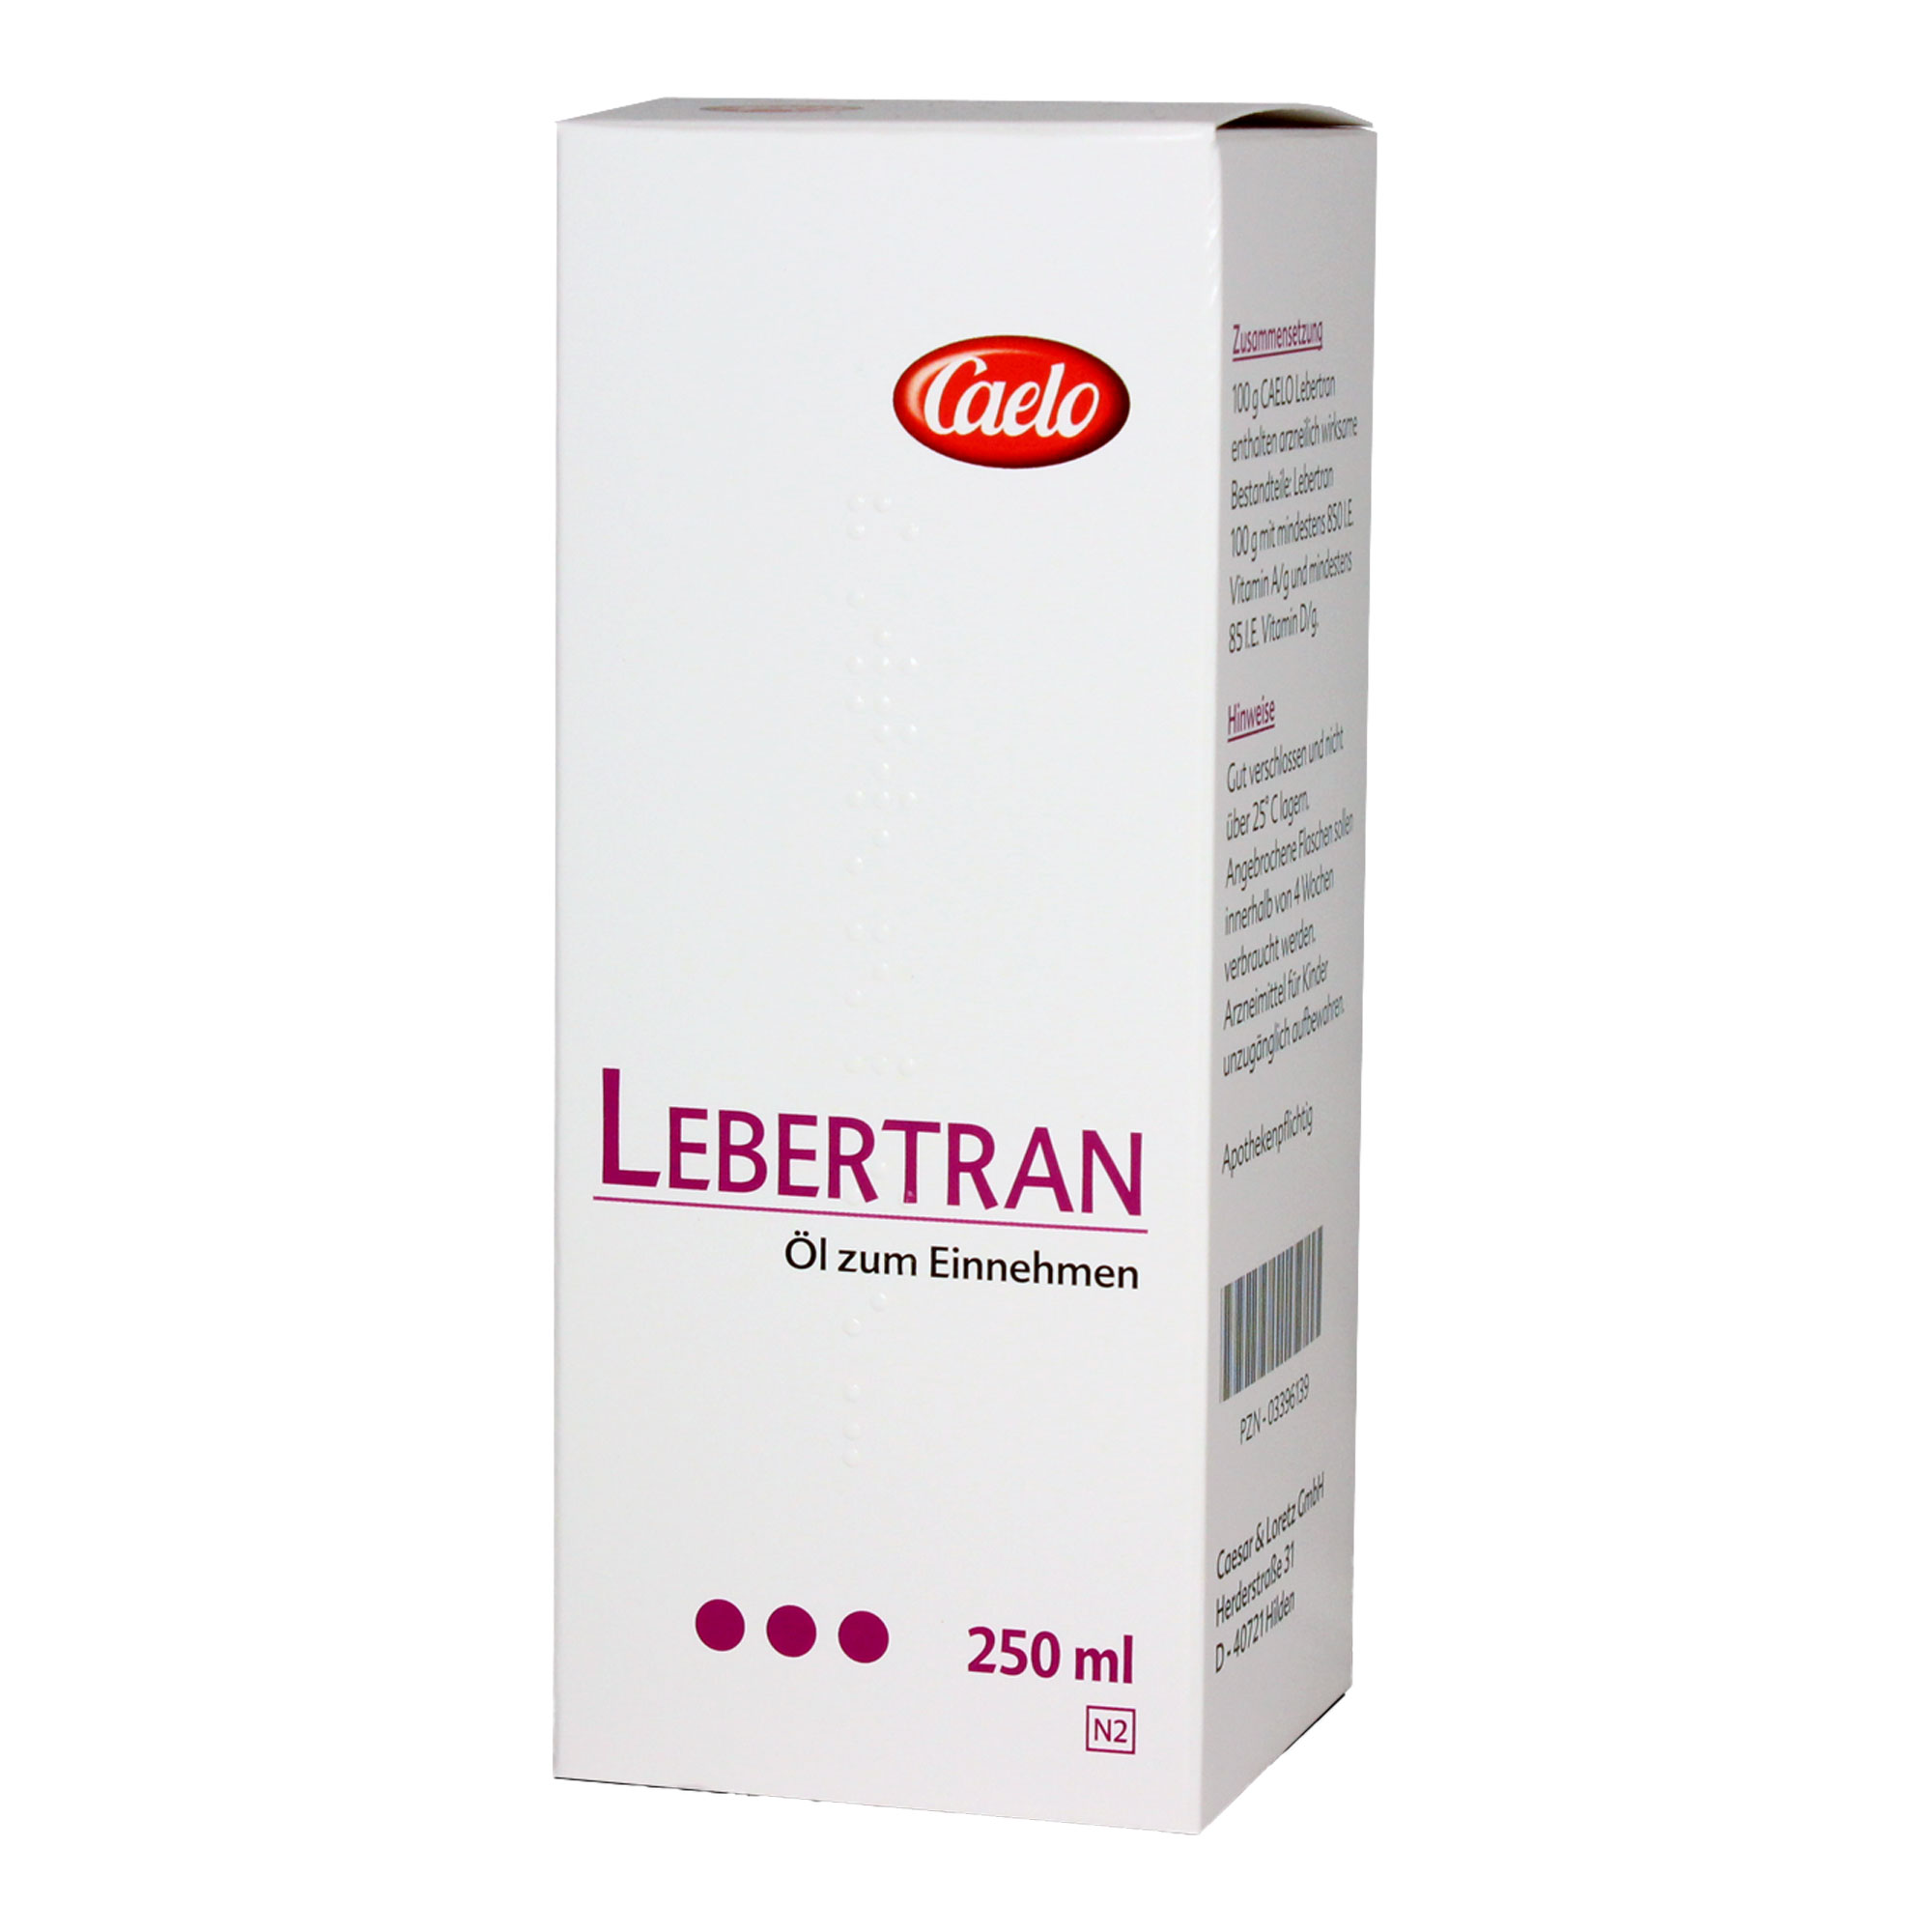 Lebertran ist reich an Omega-3-Fettsäuren, Vitamin A und D.